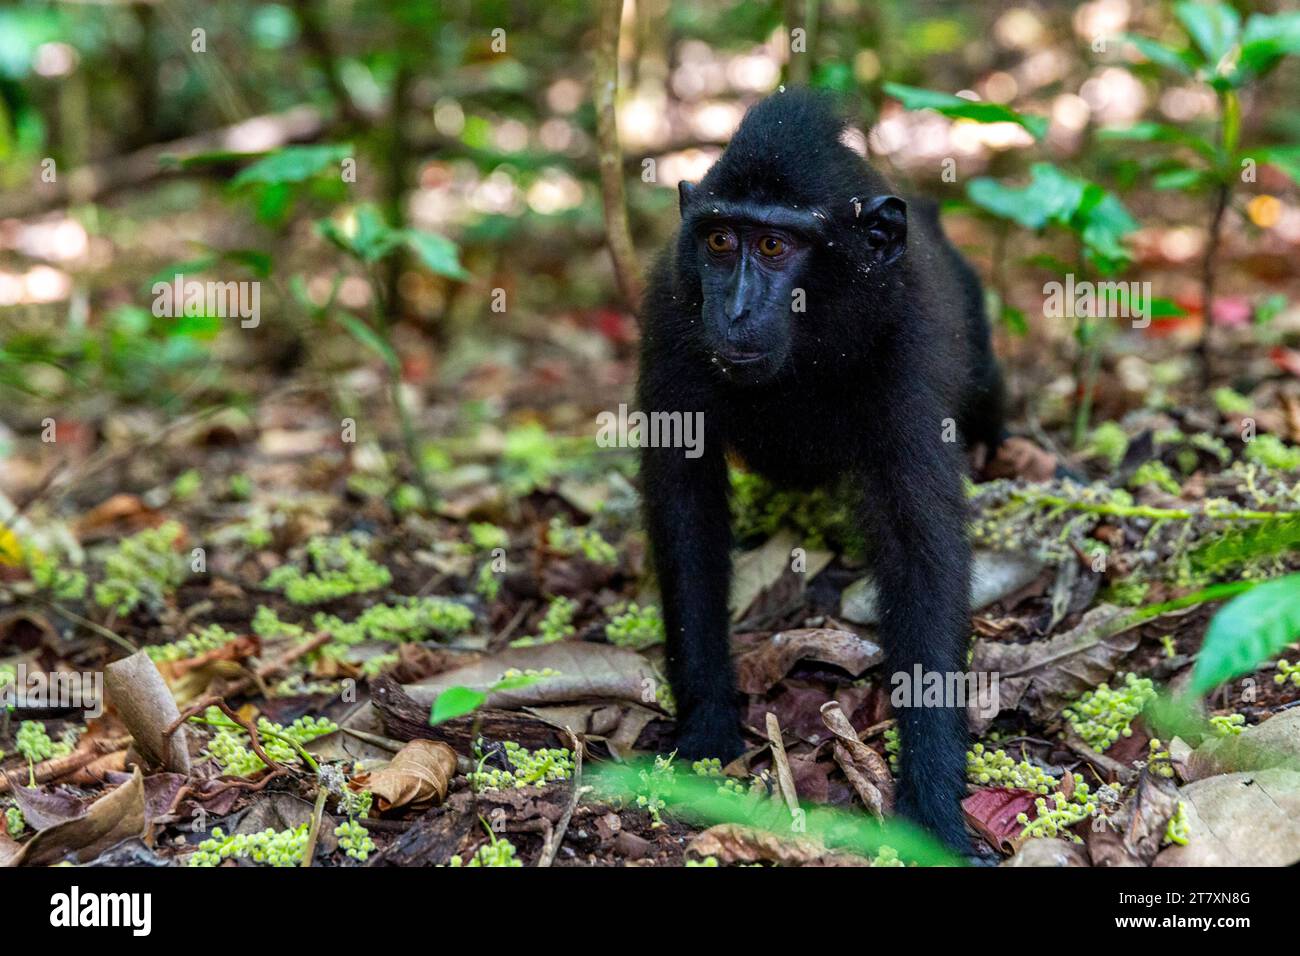 Jeune Célèbes macaque à crête (Macaca nigra), recherche de nourriture dans la réserve naturelle de Tangkoko Batuangus, Sulawesi, Indonésie, Asie du Sud-est, Asie Banque D'Images